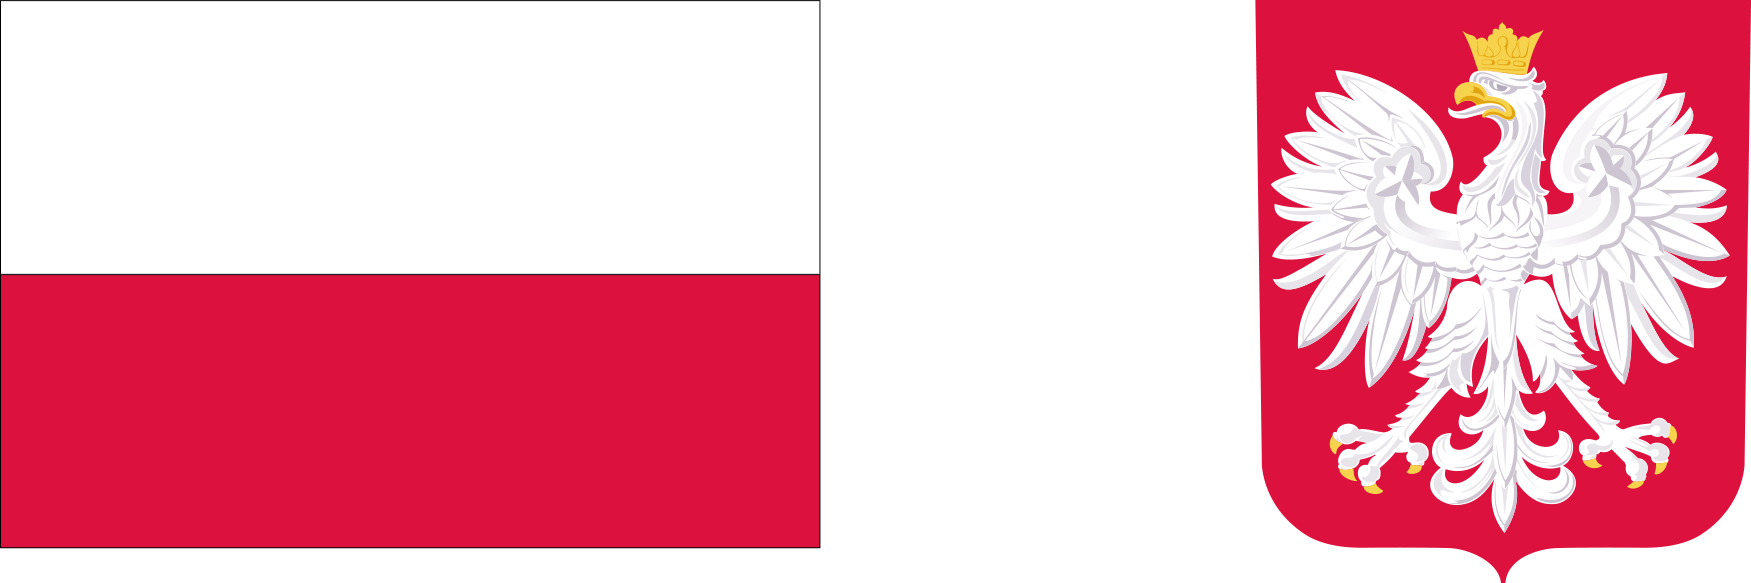 Godło Polski i Flaga Polski